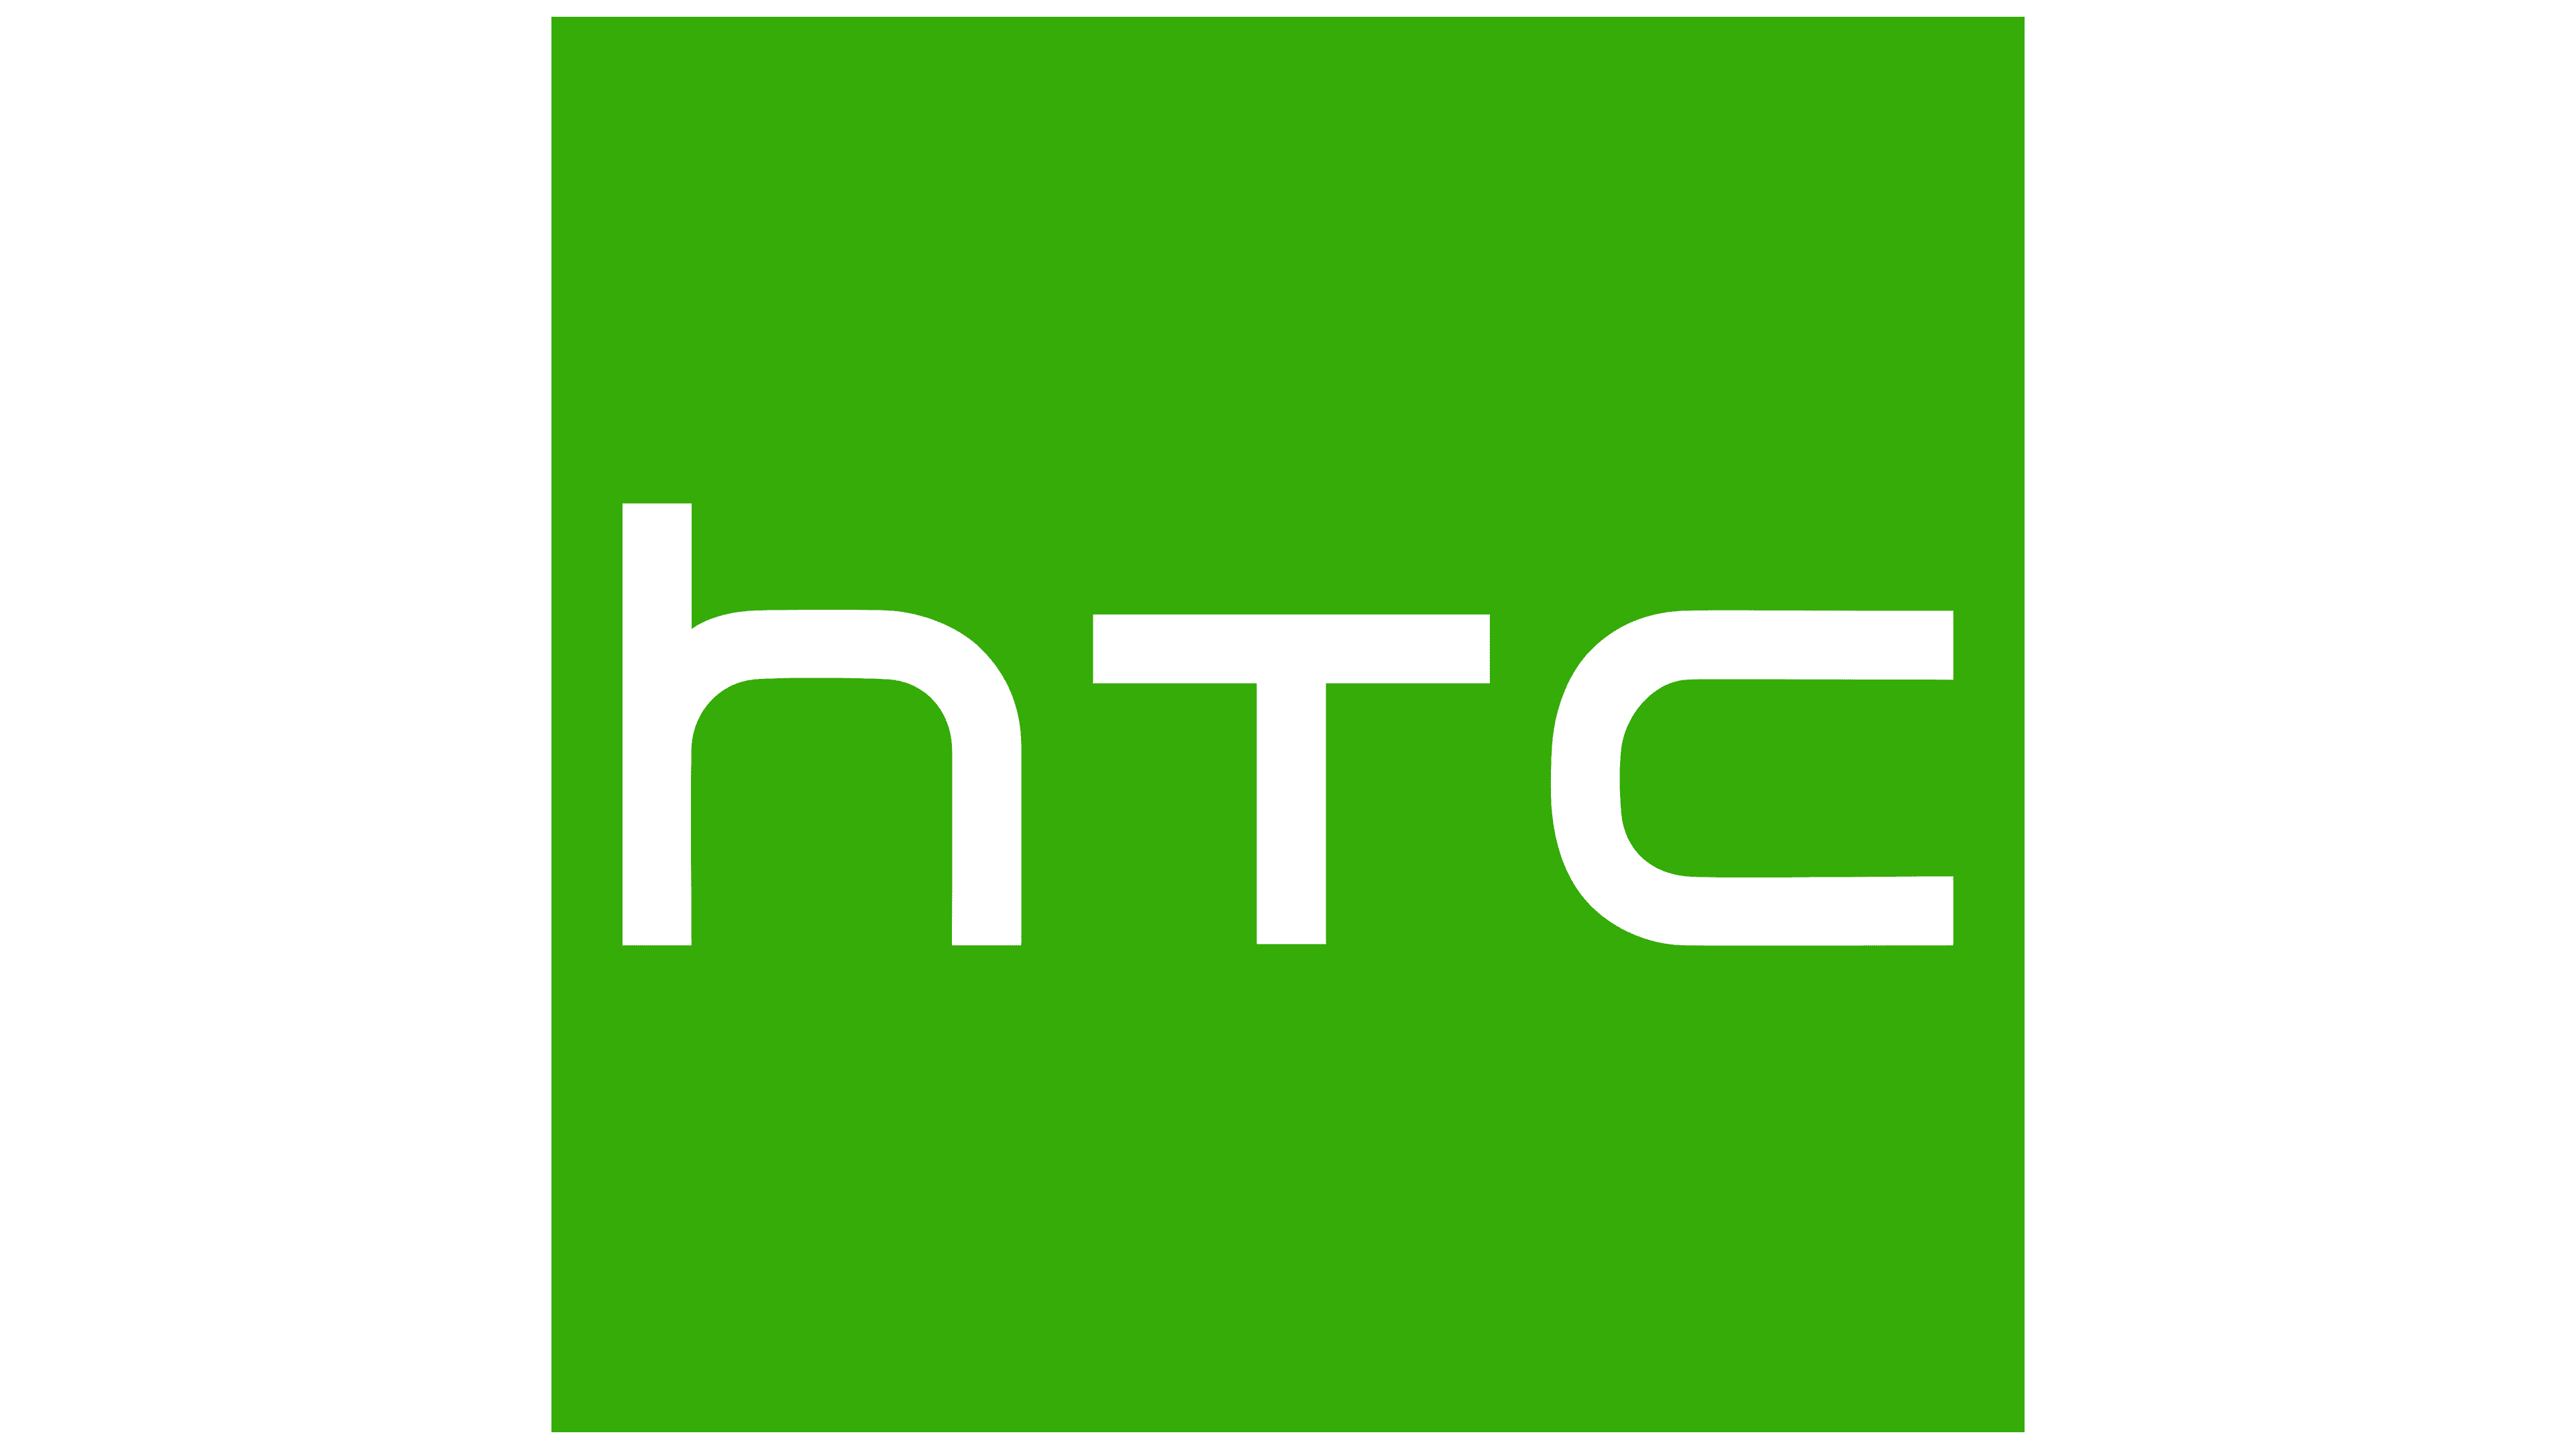 htc logo wallpaper